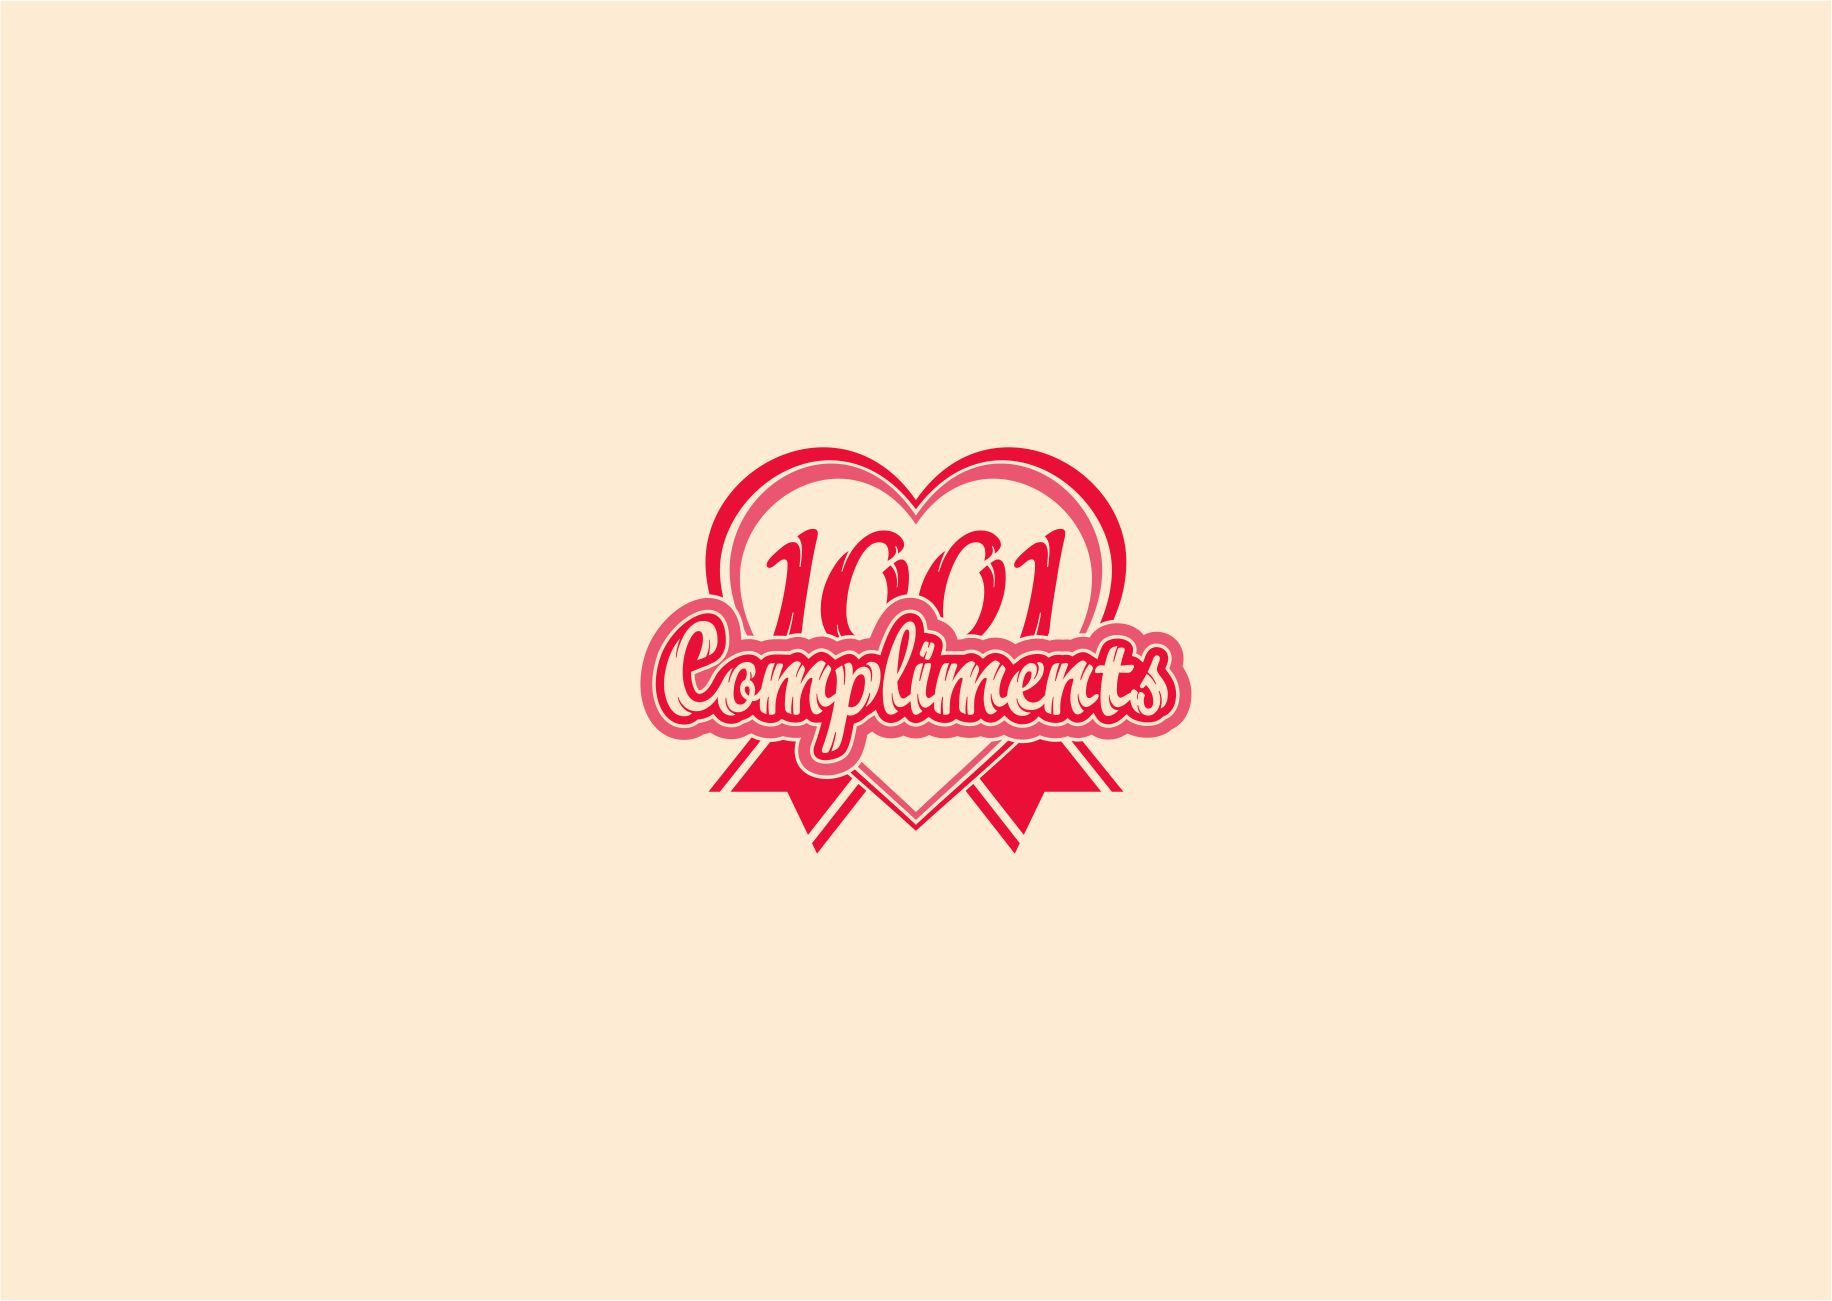 Логотип для 1001 Compliments - дизайнер graphin4ik